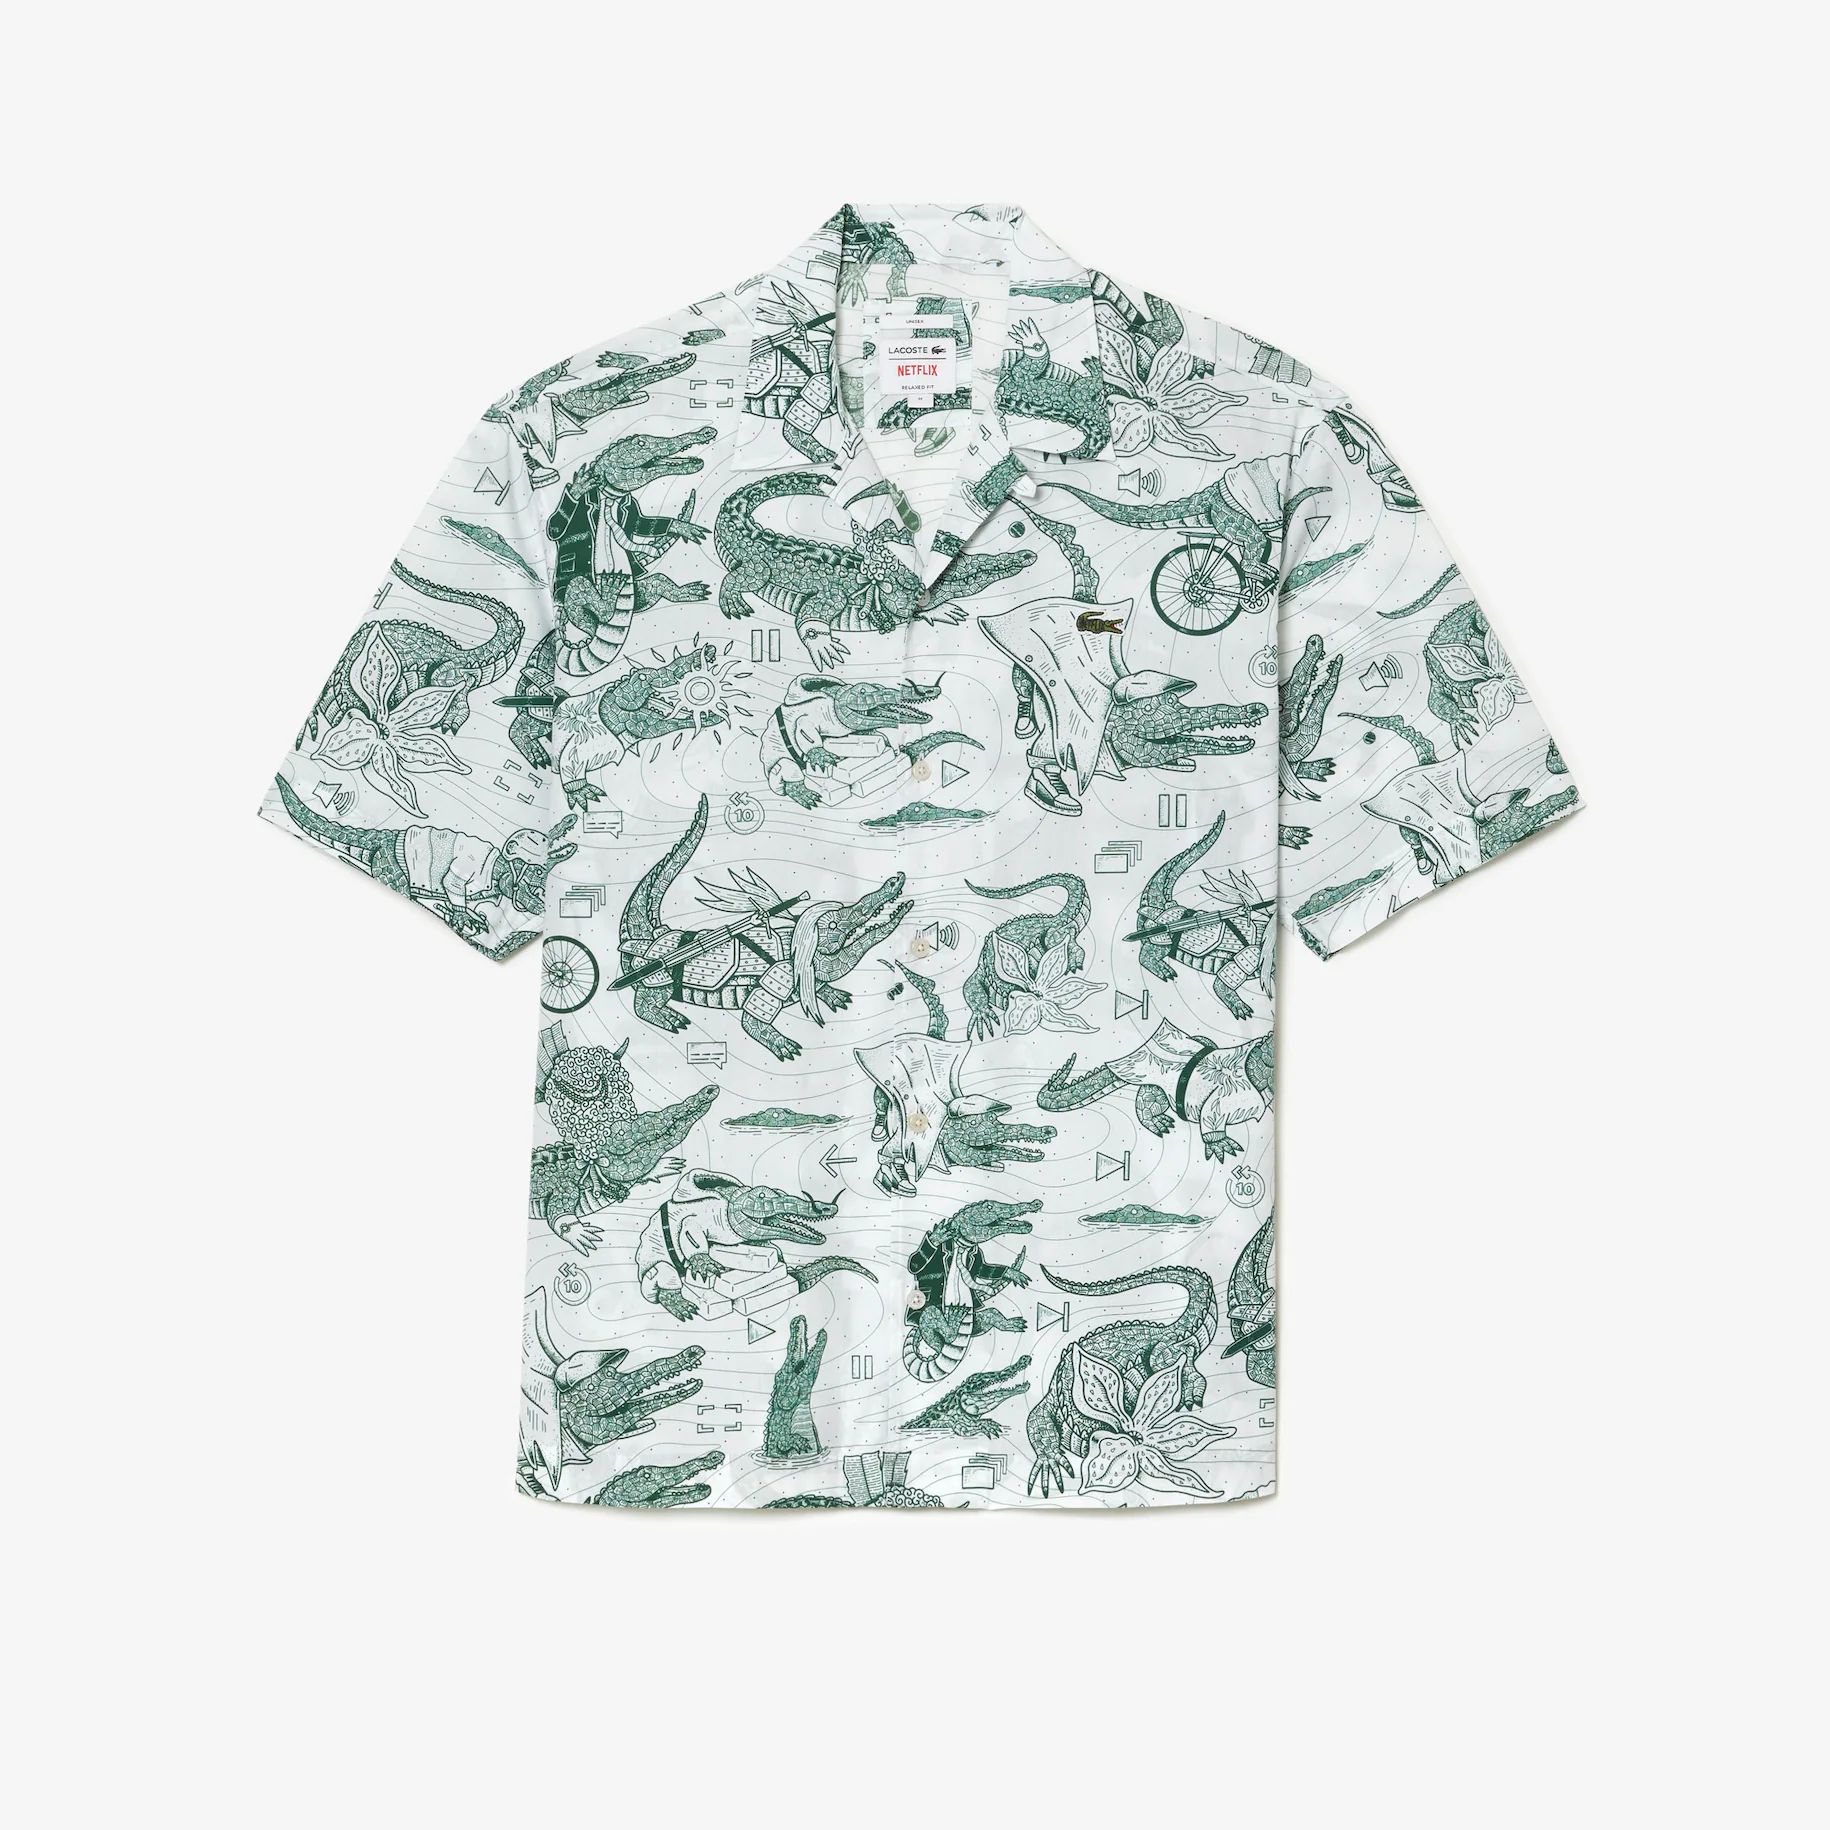 Unisex Lacoste x Netflix Short Sleeve Printed Shirt | Lacoste (US)